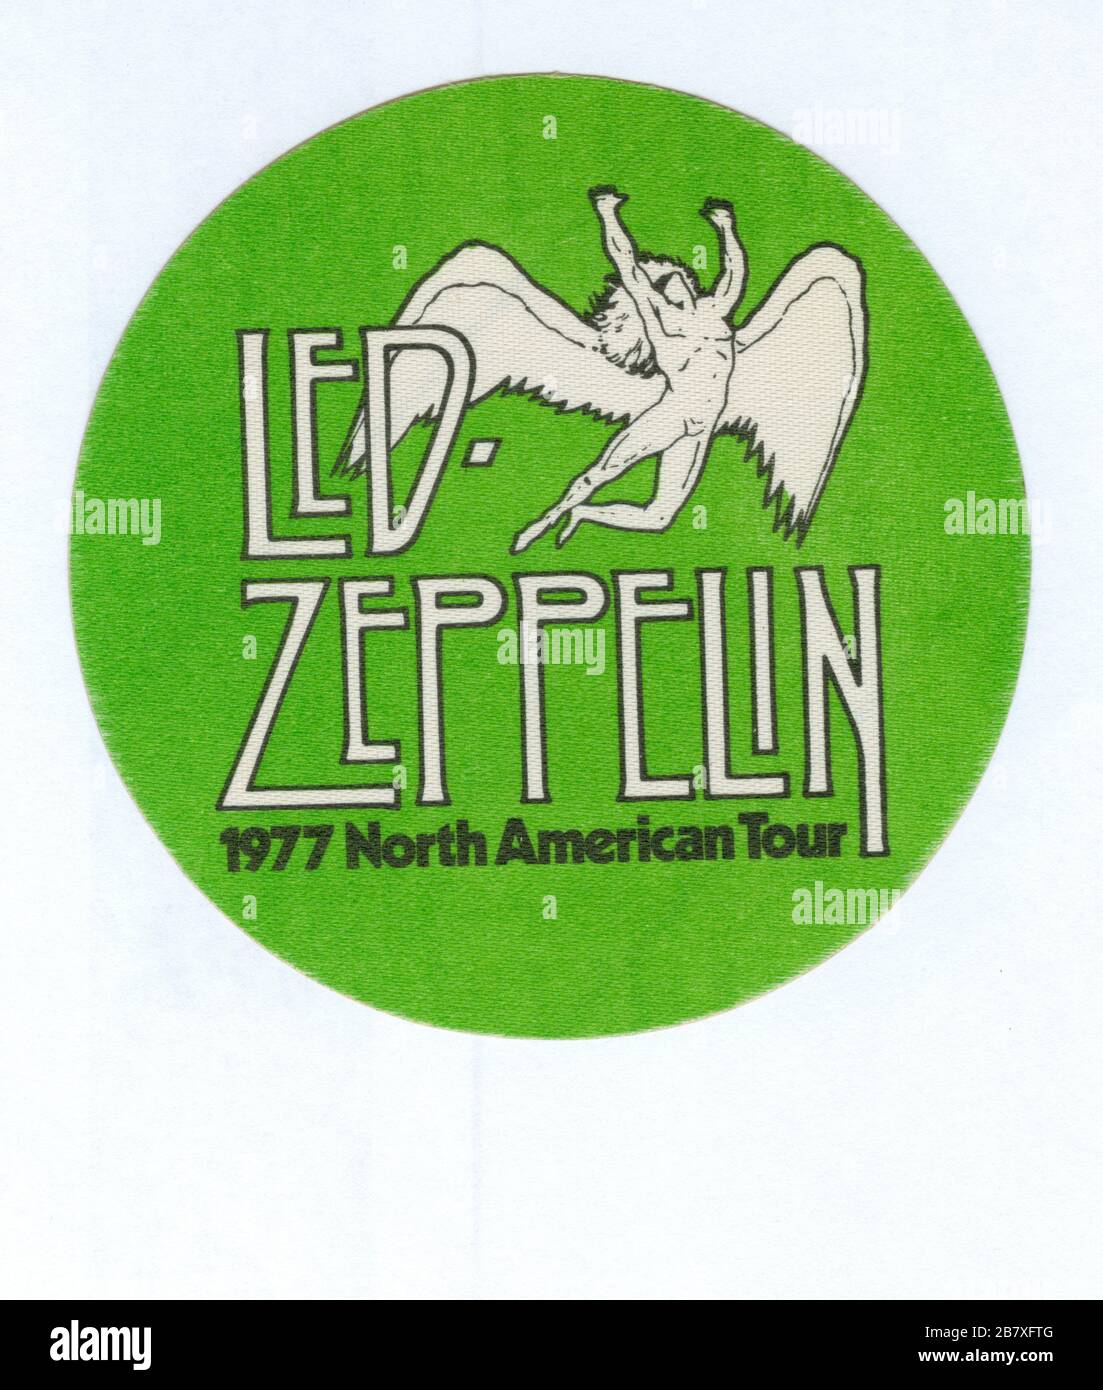 Il Backstage Pass ufficiale di LED Zeppelin dal loro concerto al Chicago Stadium show di Chicago, Illinois, il 7 aprile 1977. Questo passo era in realtà il passo turistico di Zeppelin. Questo non era insolito quell'anno, ma all'inizio degli anni '70 la maggior parte delle band non stampava i propri passi. Per vedere le mie altre immagini d'epoca legate alla musica, Cerca: Prestor vintage music Foto Stock